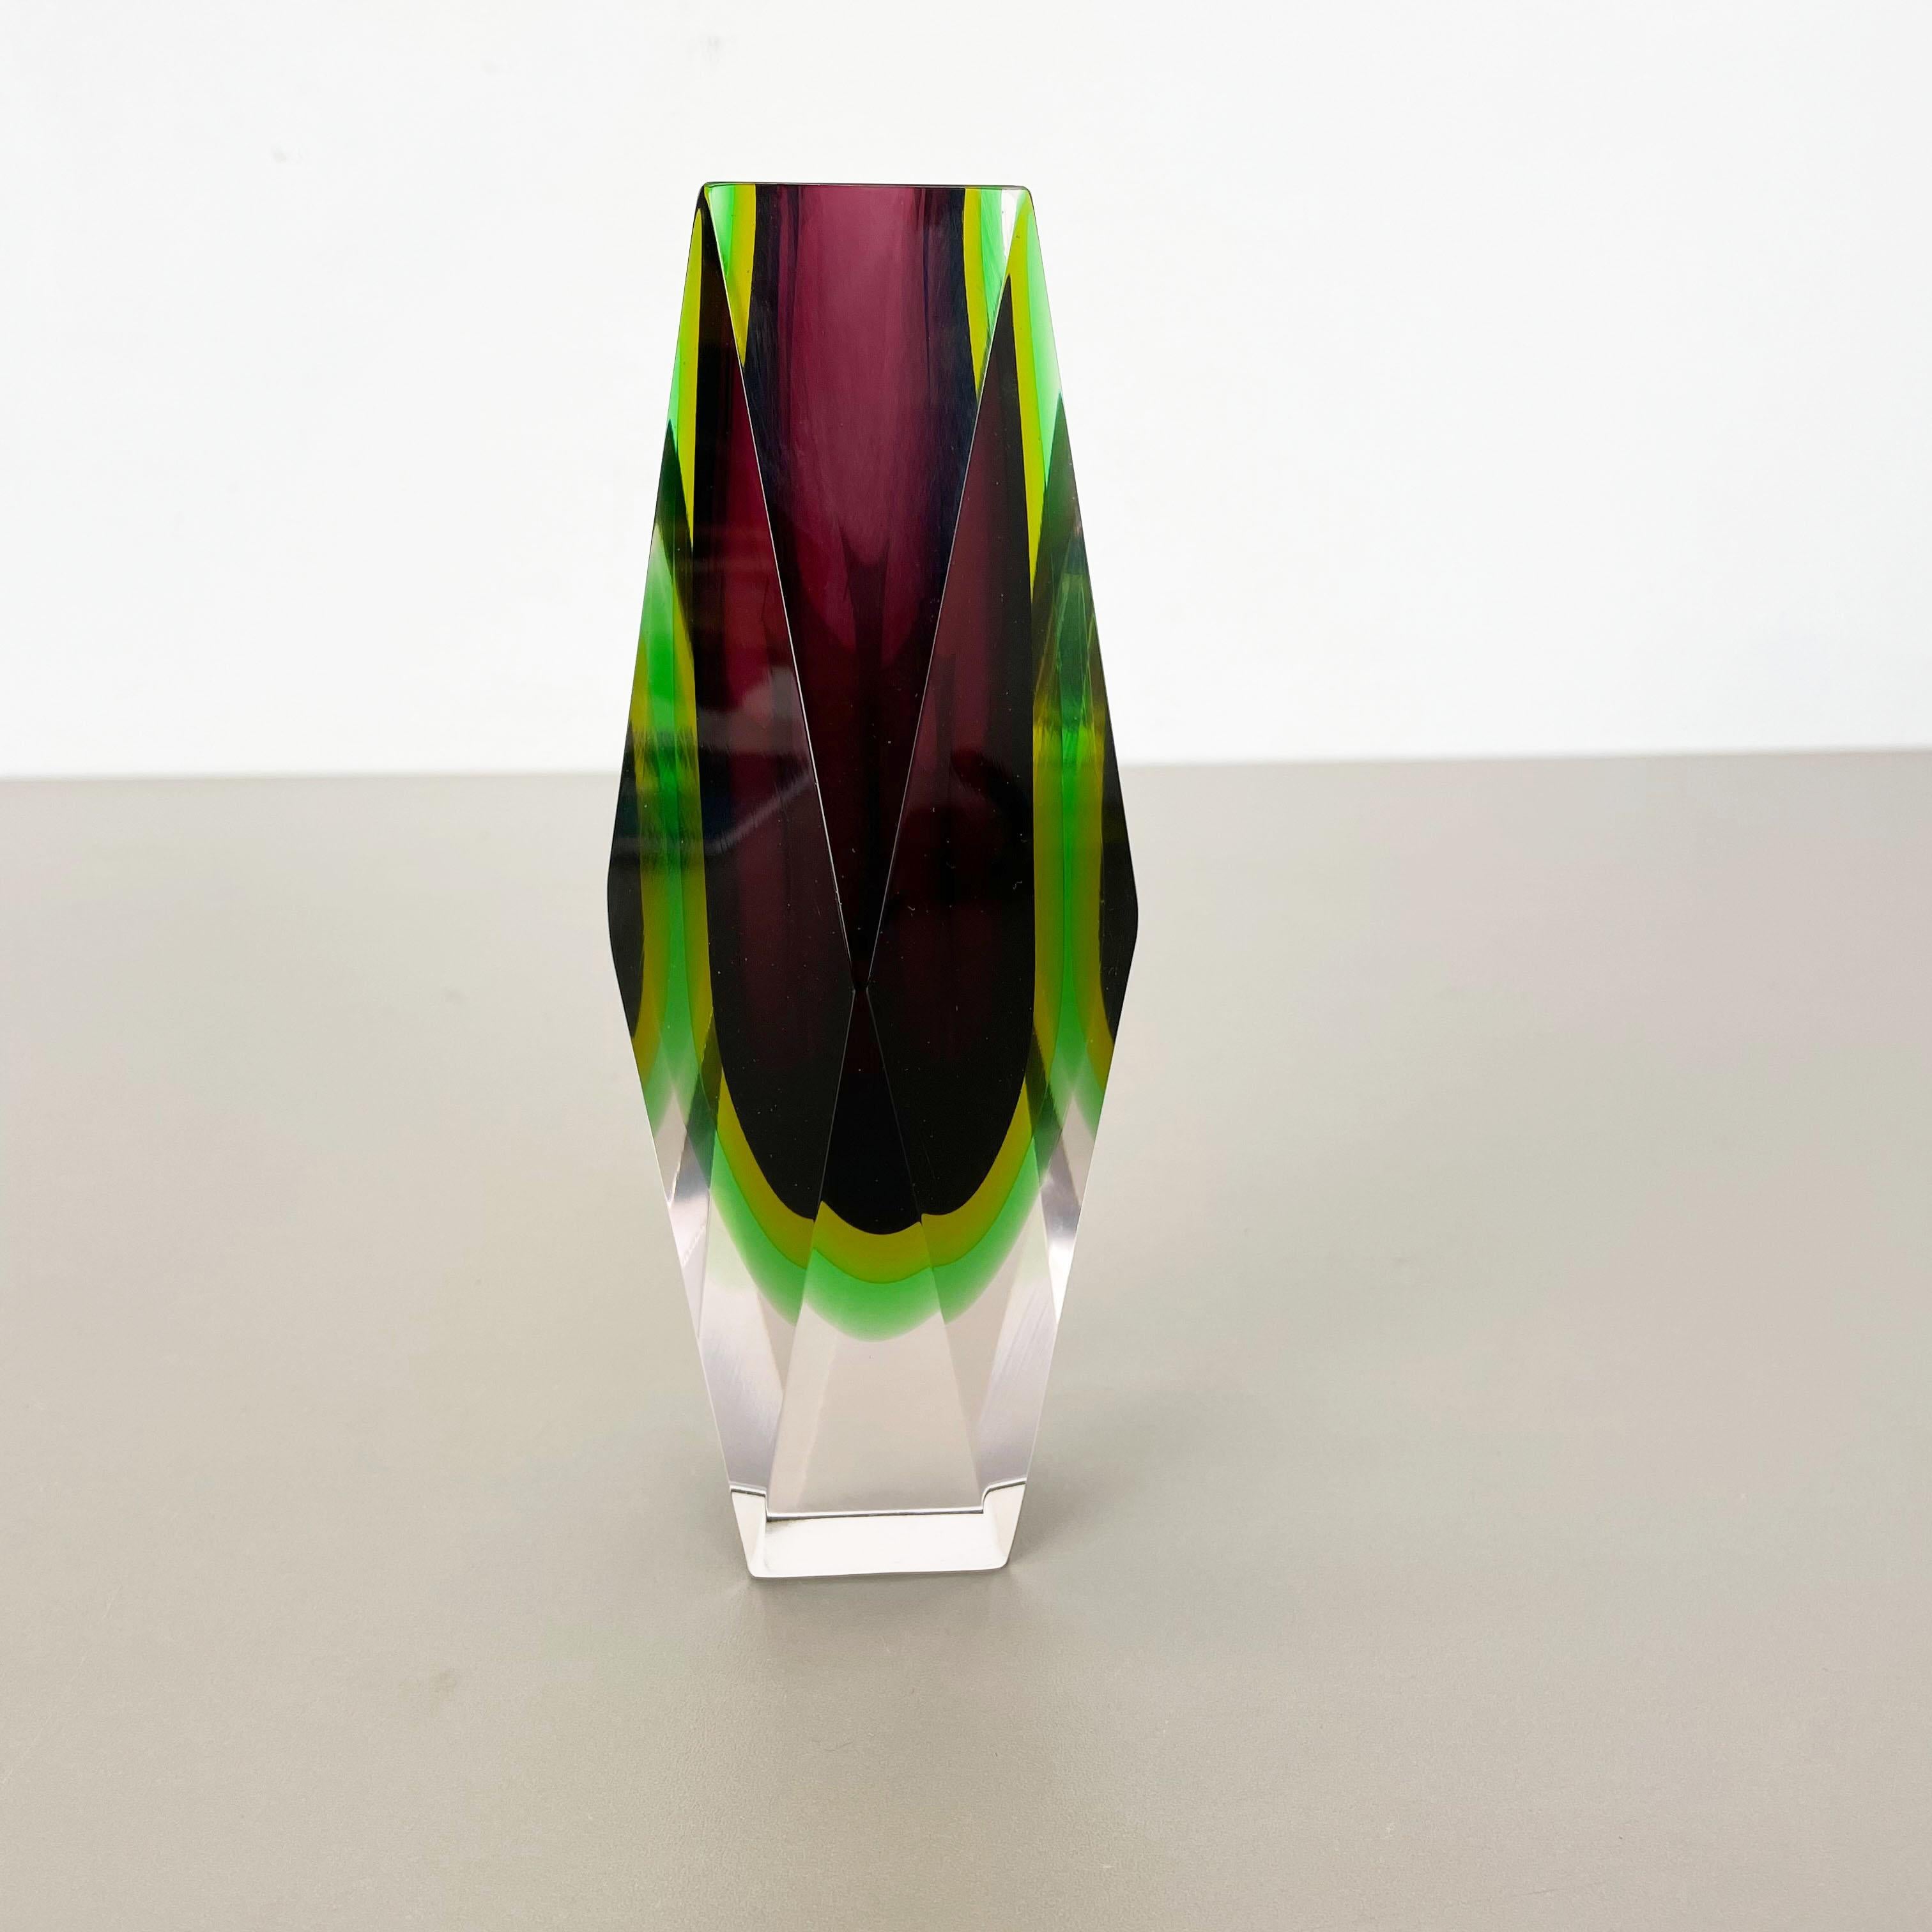 Article :

Vase en verre de Murano - 4 couleurs


Origine :

Murano, Italie


Conception :

Flavio Poli


Décennie :

1970s



Ce vase en verre vintage original a été conçu par Flavio Poli et produit dans les années 1970 à